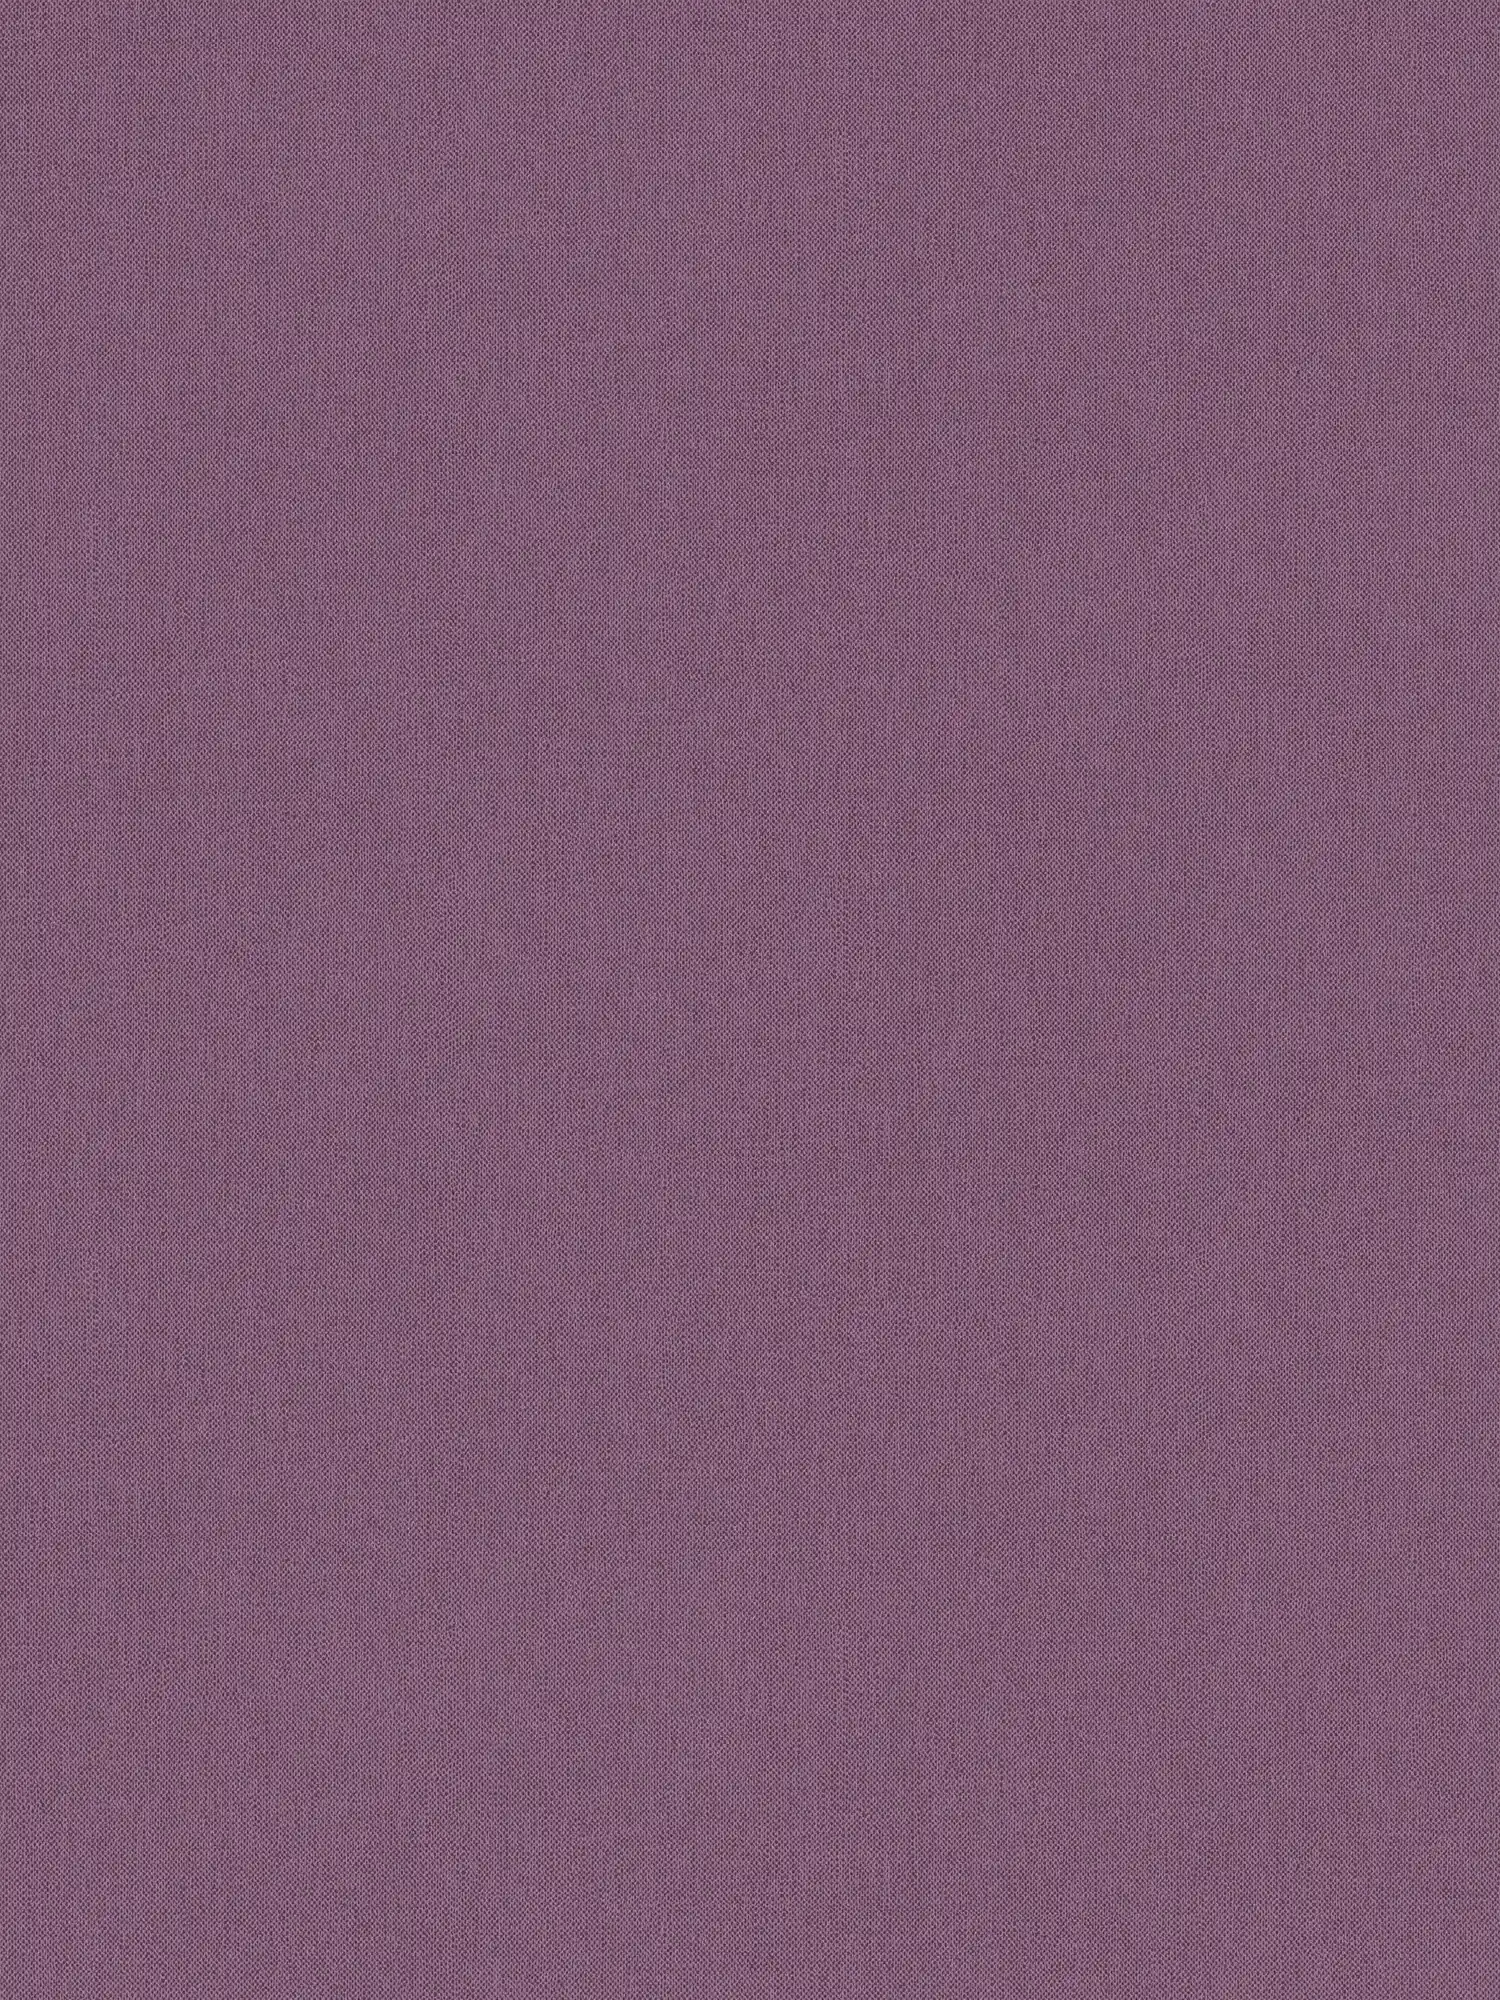 Violet papier peint uni, mat aspect textile & structure tissée
